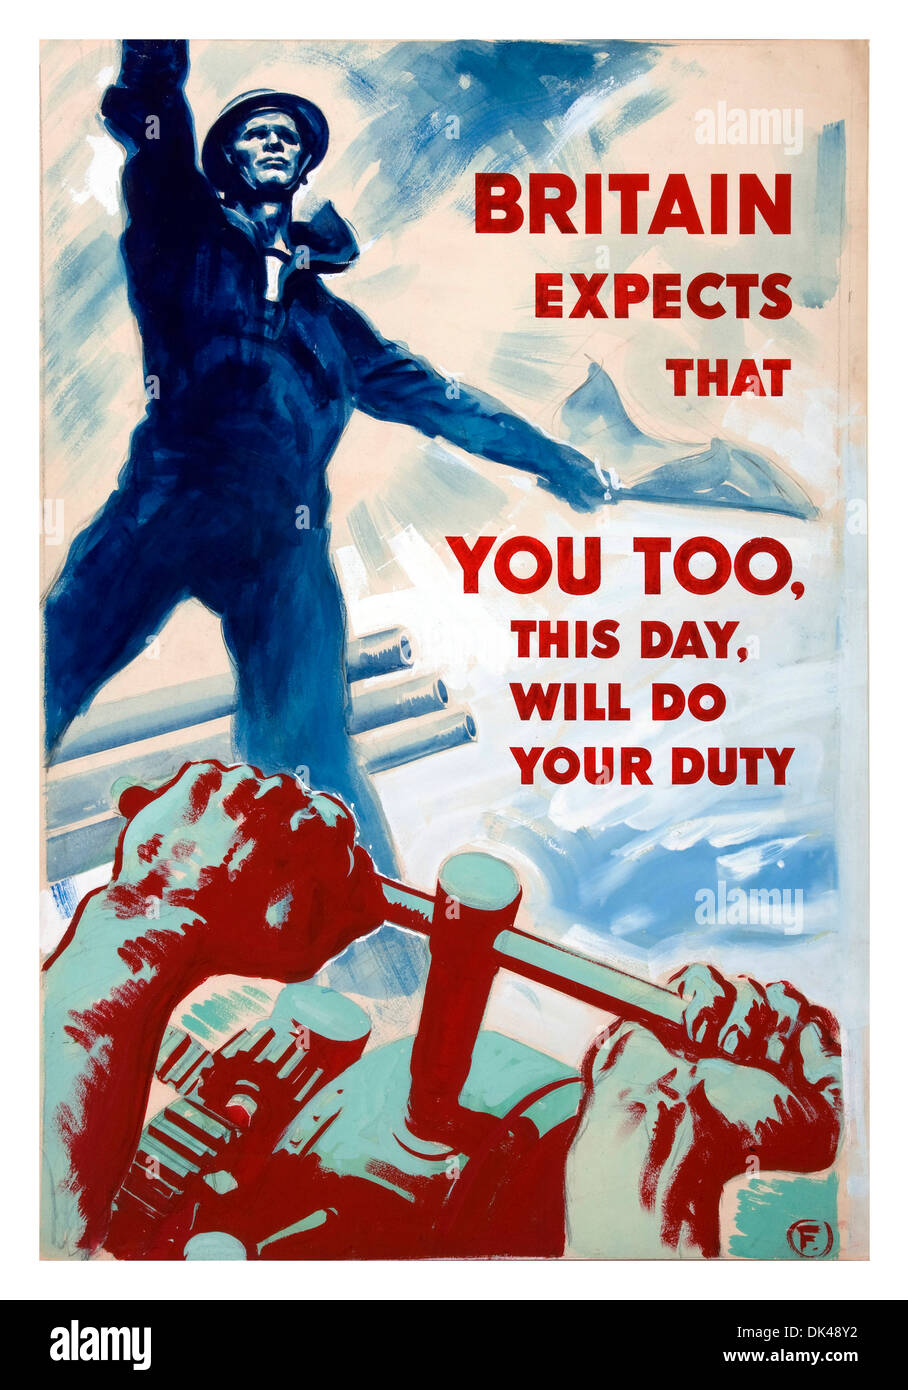 Affiches de propagande de la WW2 La promotion de dur travail à domicile au Royaume-Uni pendant la guerre à l'aide de Lord Nelsons paroles célèbres 'Grande-Bretagne s'attend à ce que..." Banque D'Images